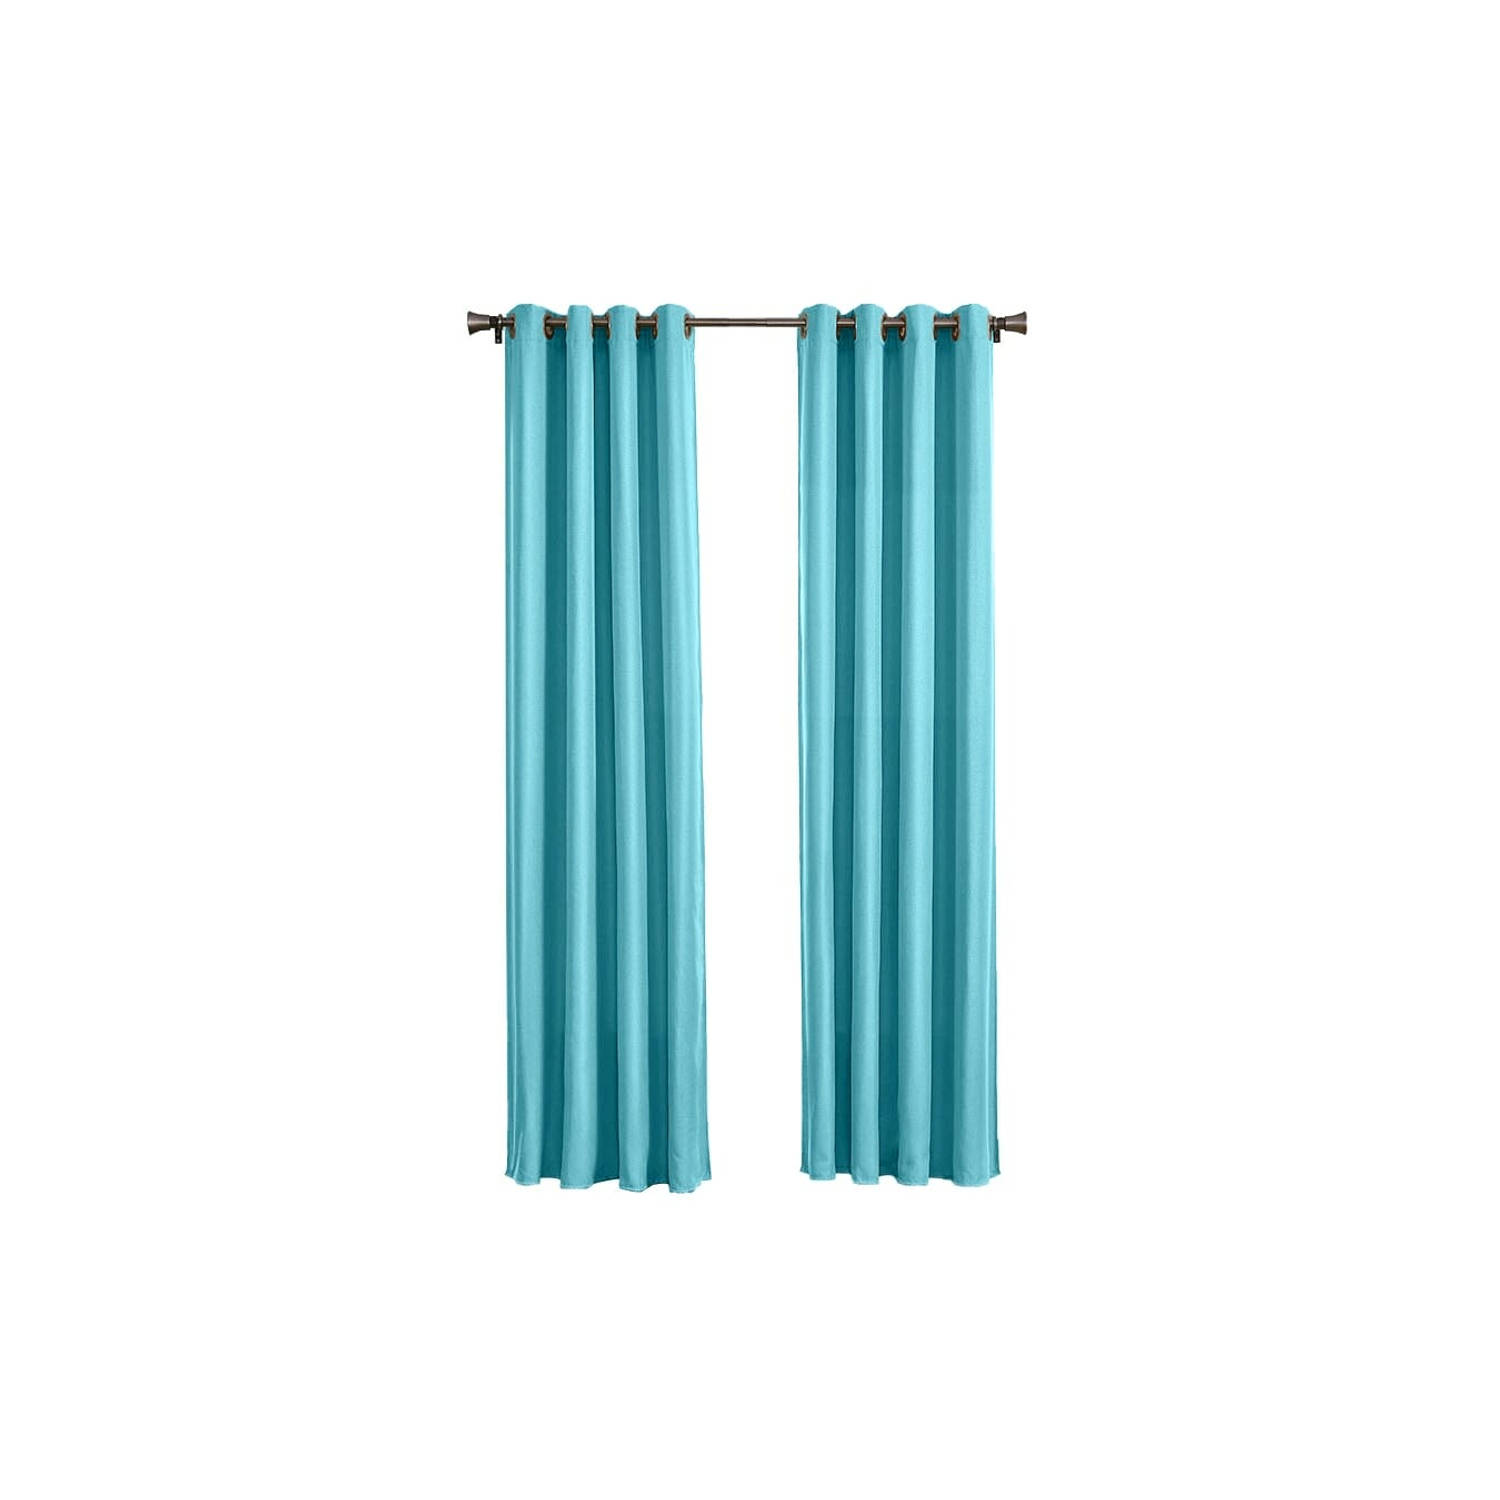 Larson - Luxe verduisterend gordijn met ringen- 300x250 cm - Turquoise